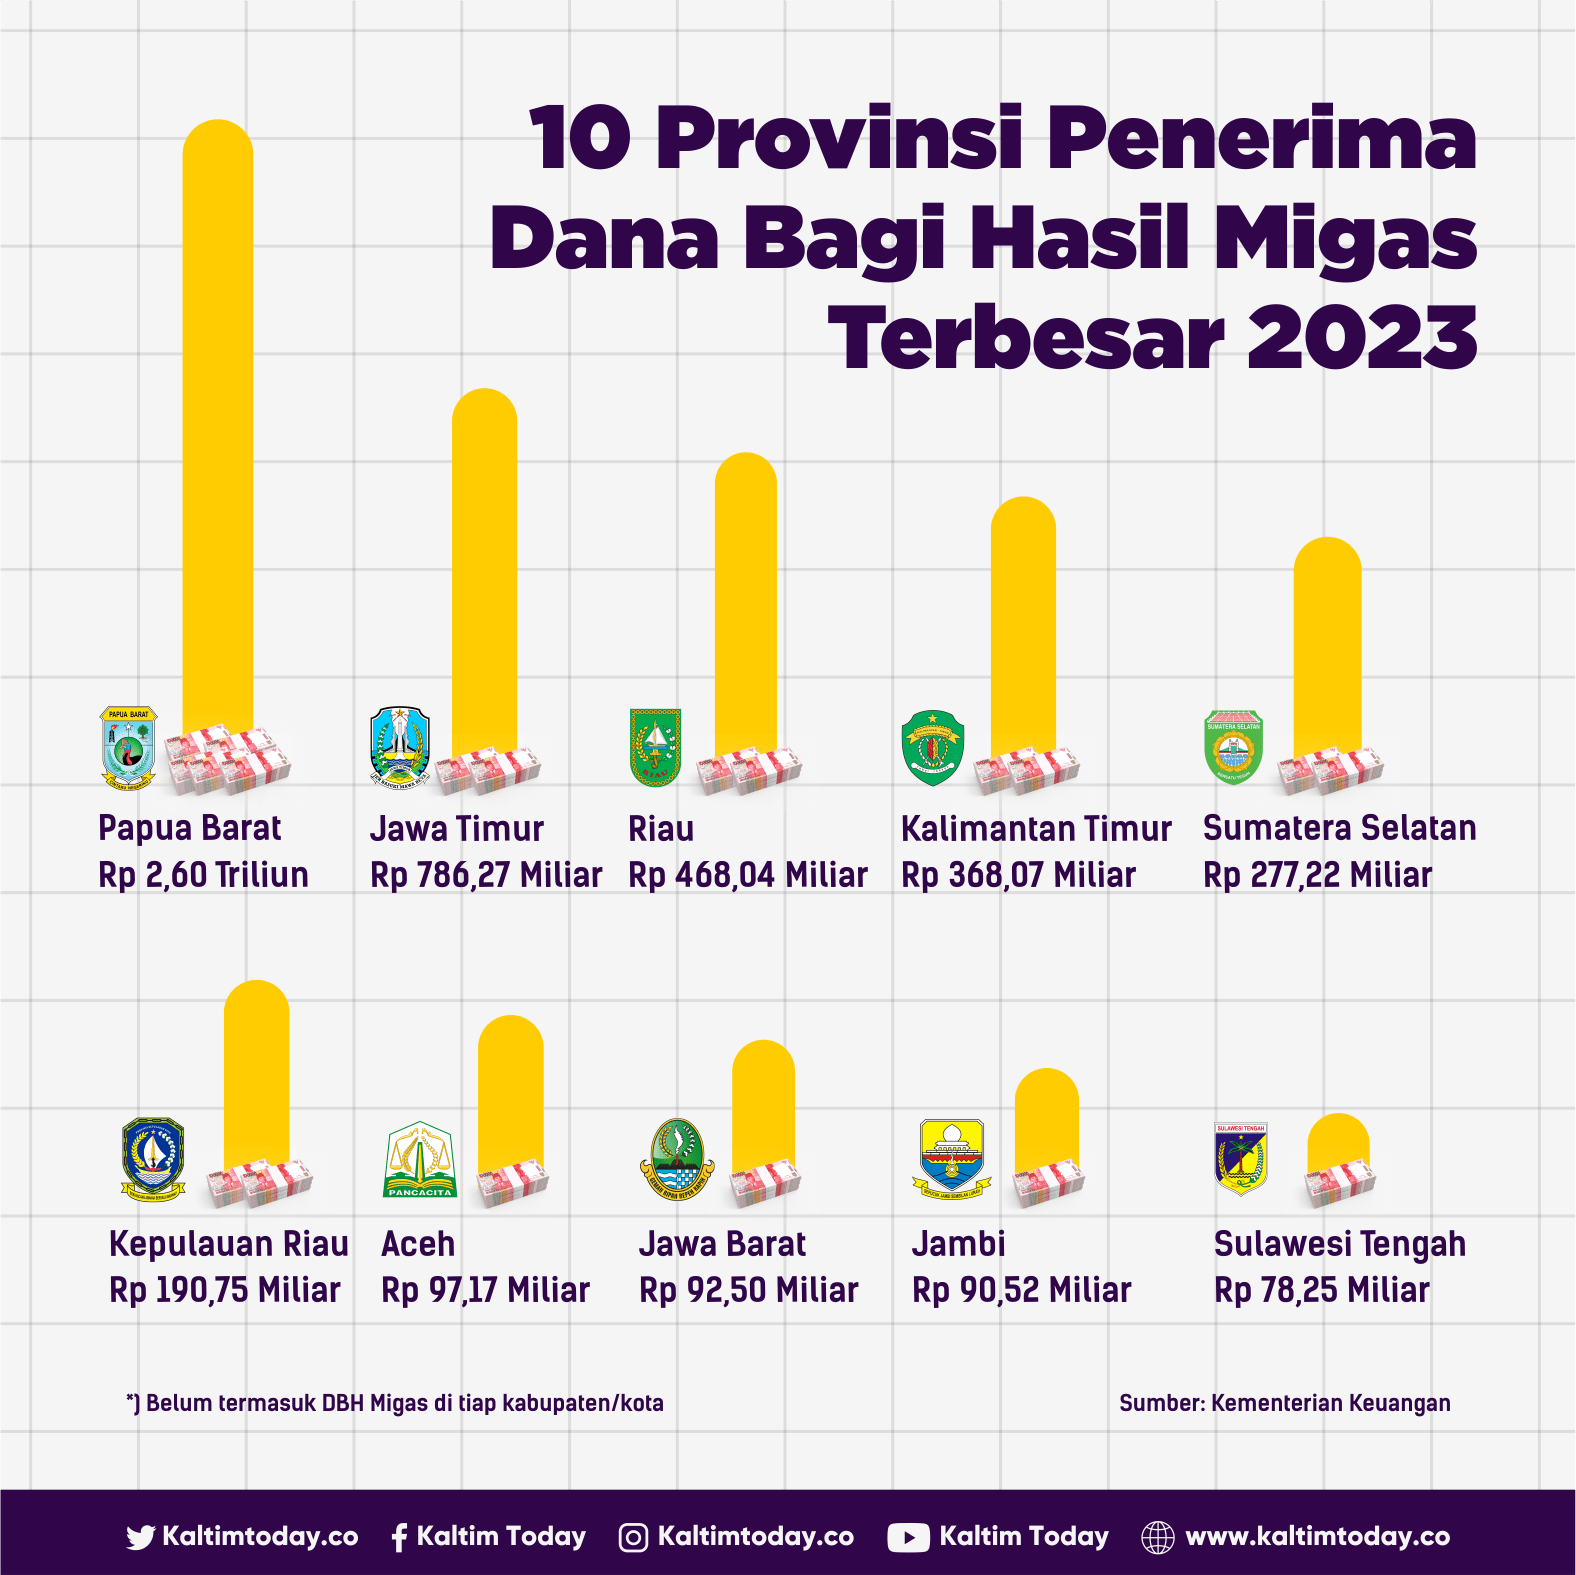 10 Provinsi Penerima Dana Bagi Hasil Migas Terbesar di Indonesia 2023